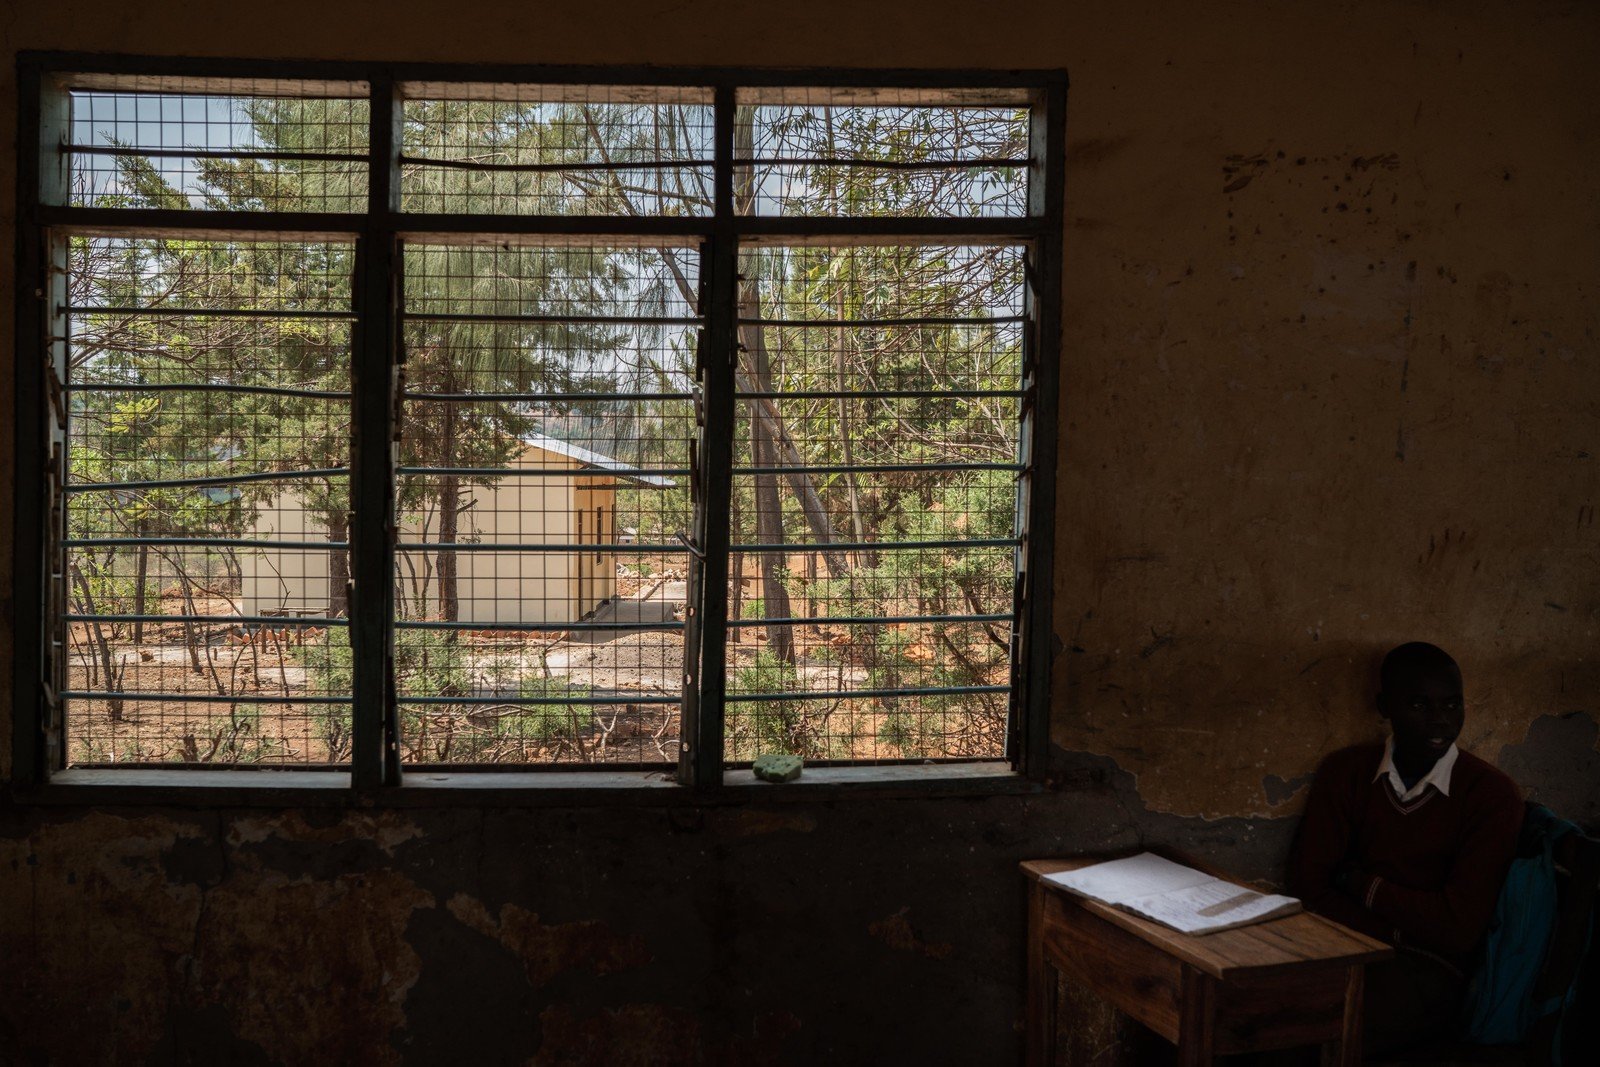 位於Rubanga的一間中學，以往課室數目嚴重不足。經過「發聲達人」向政府官員反映後，官員派員興建了新的課室。從舊課室的窗外，可以看到與新課室的對比。